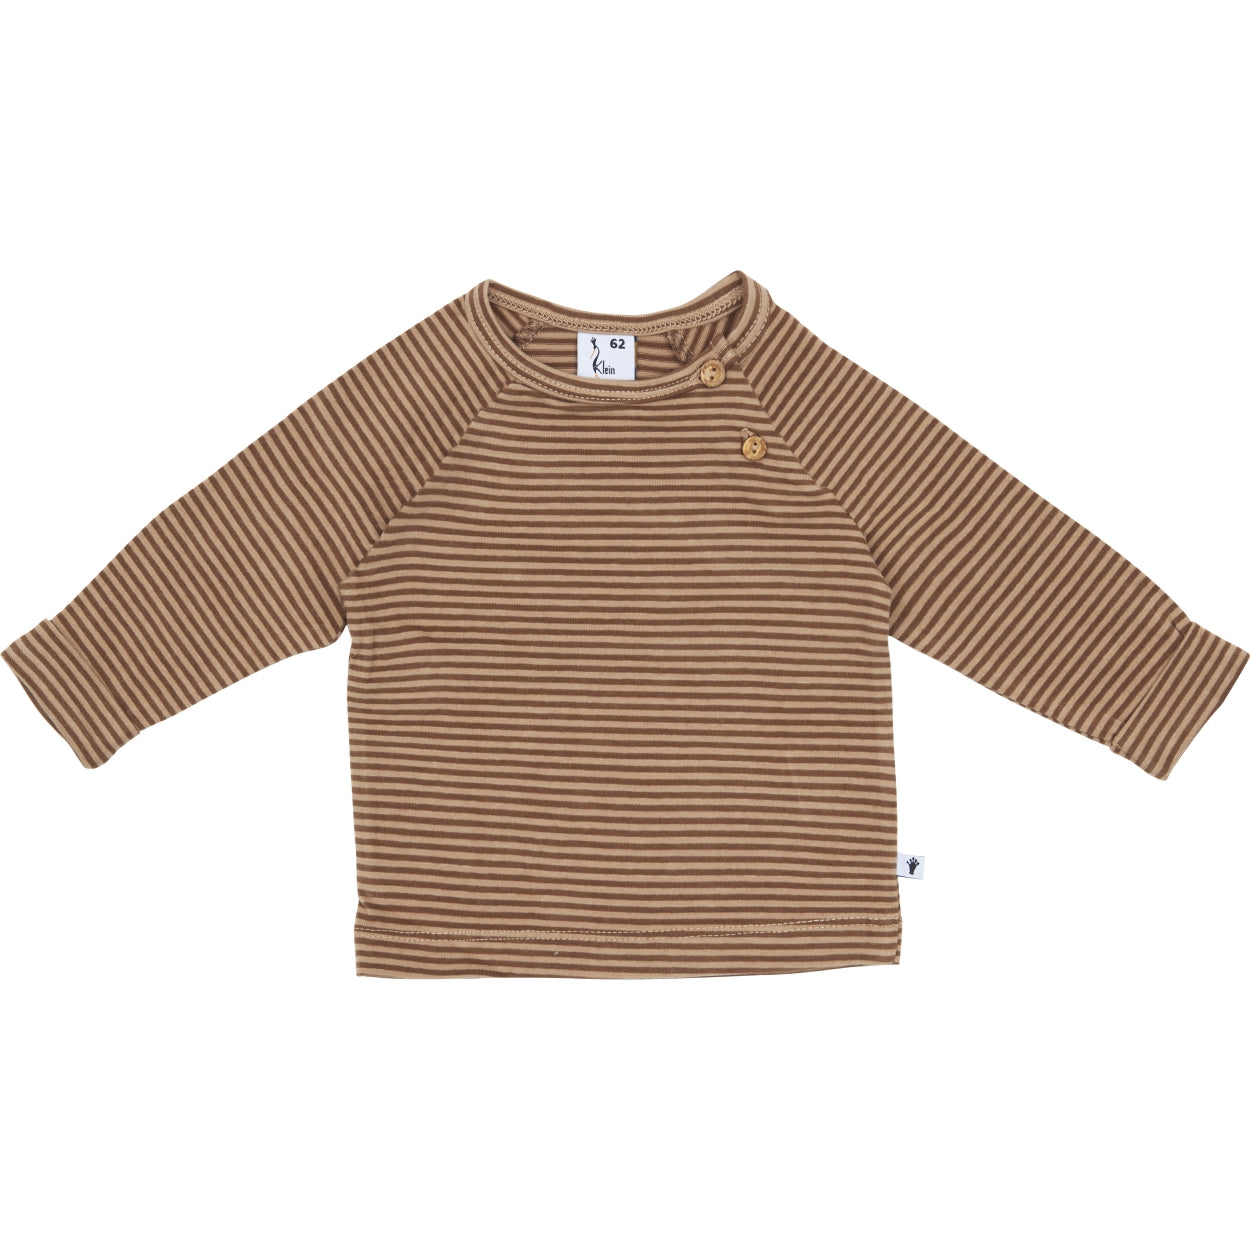 Jongens Shirt Buttons van Klein Baby in de kleur Stripe Burro/Rawhide in maat 86.